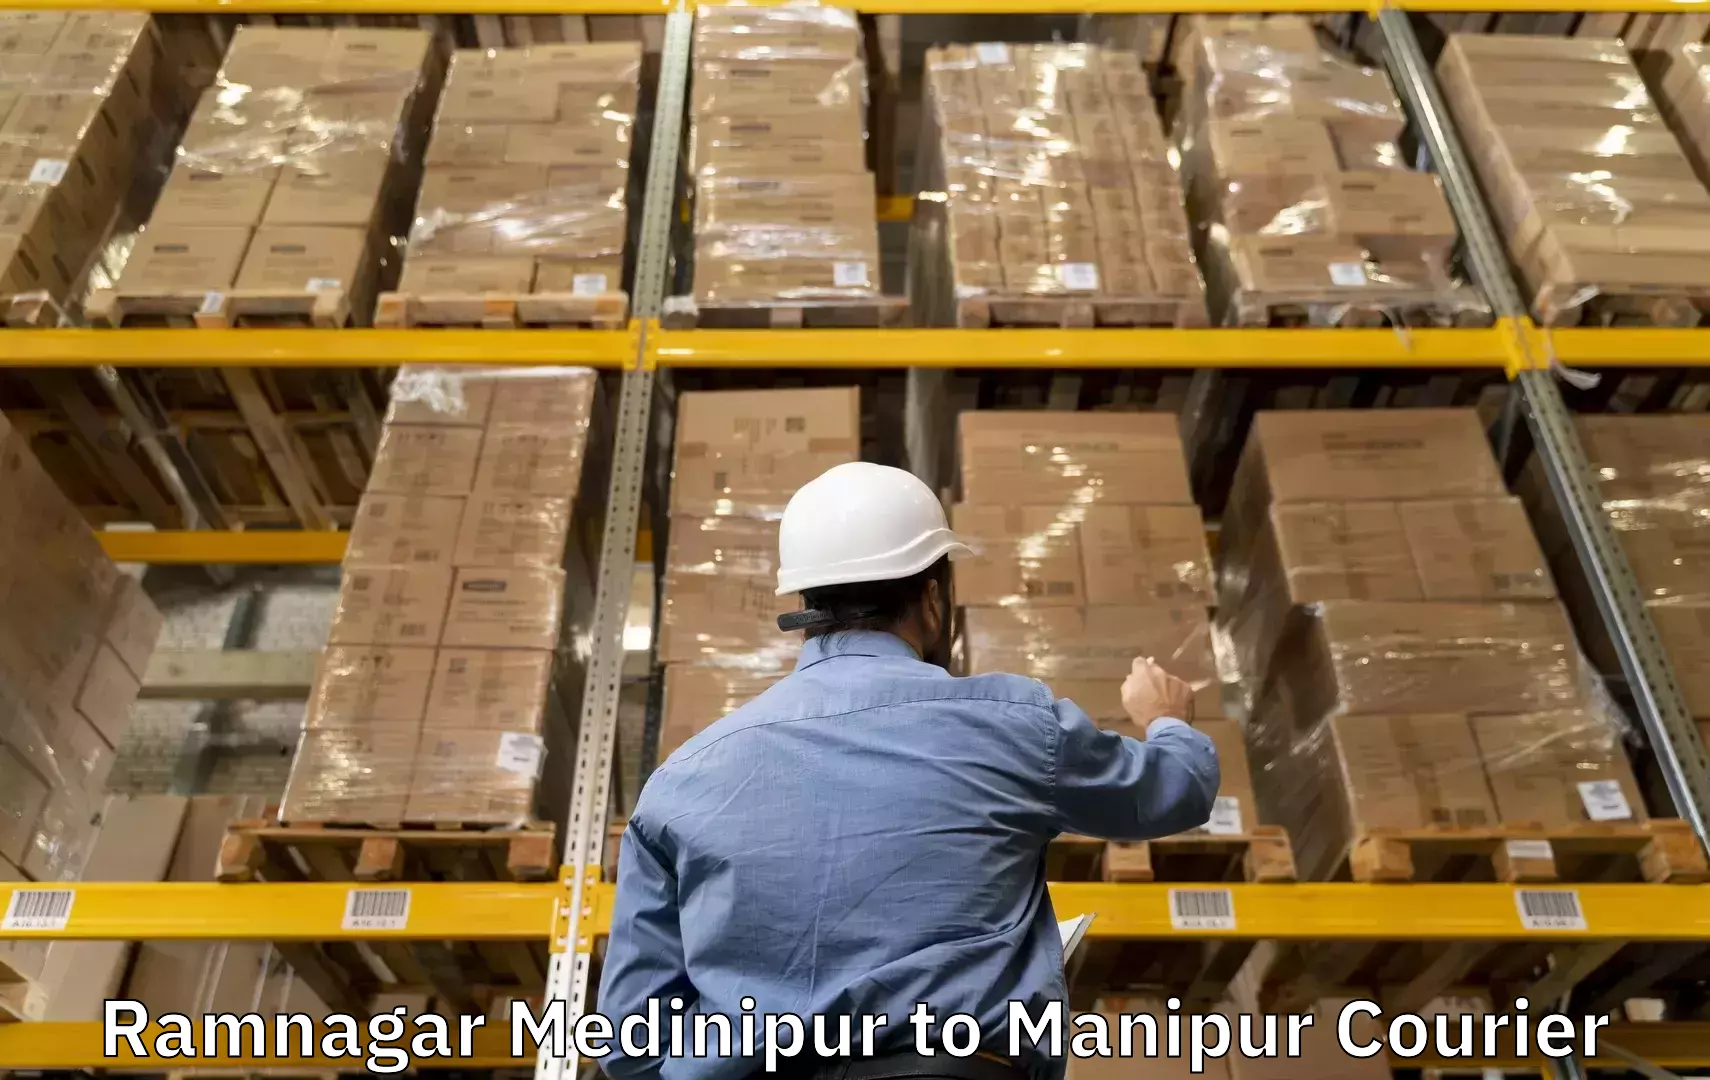 Baggage shipping service Ramnagar Medinipur to Moirang